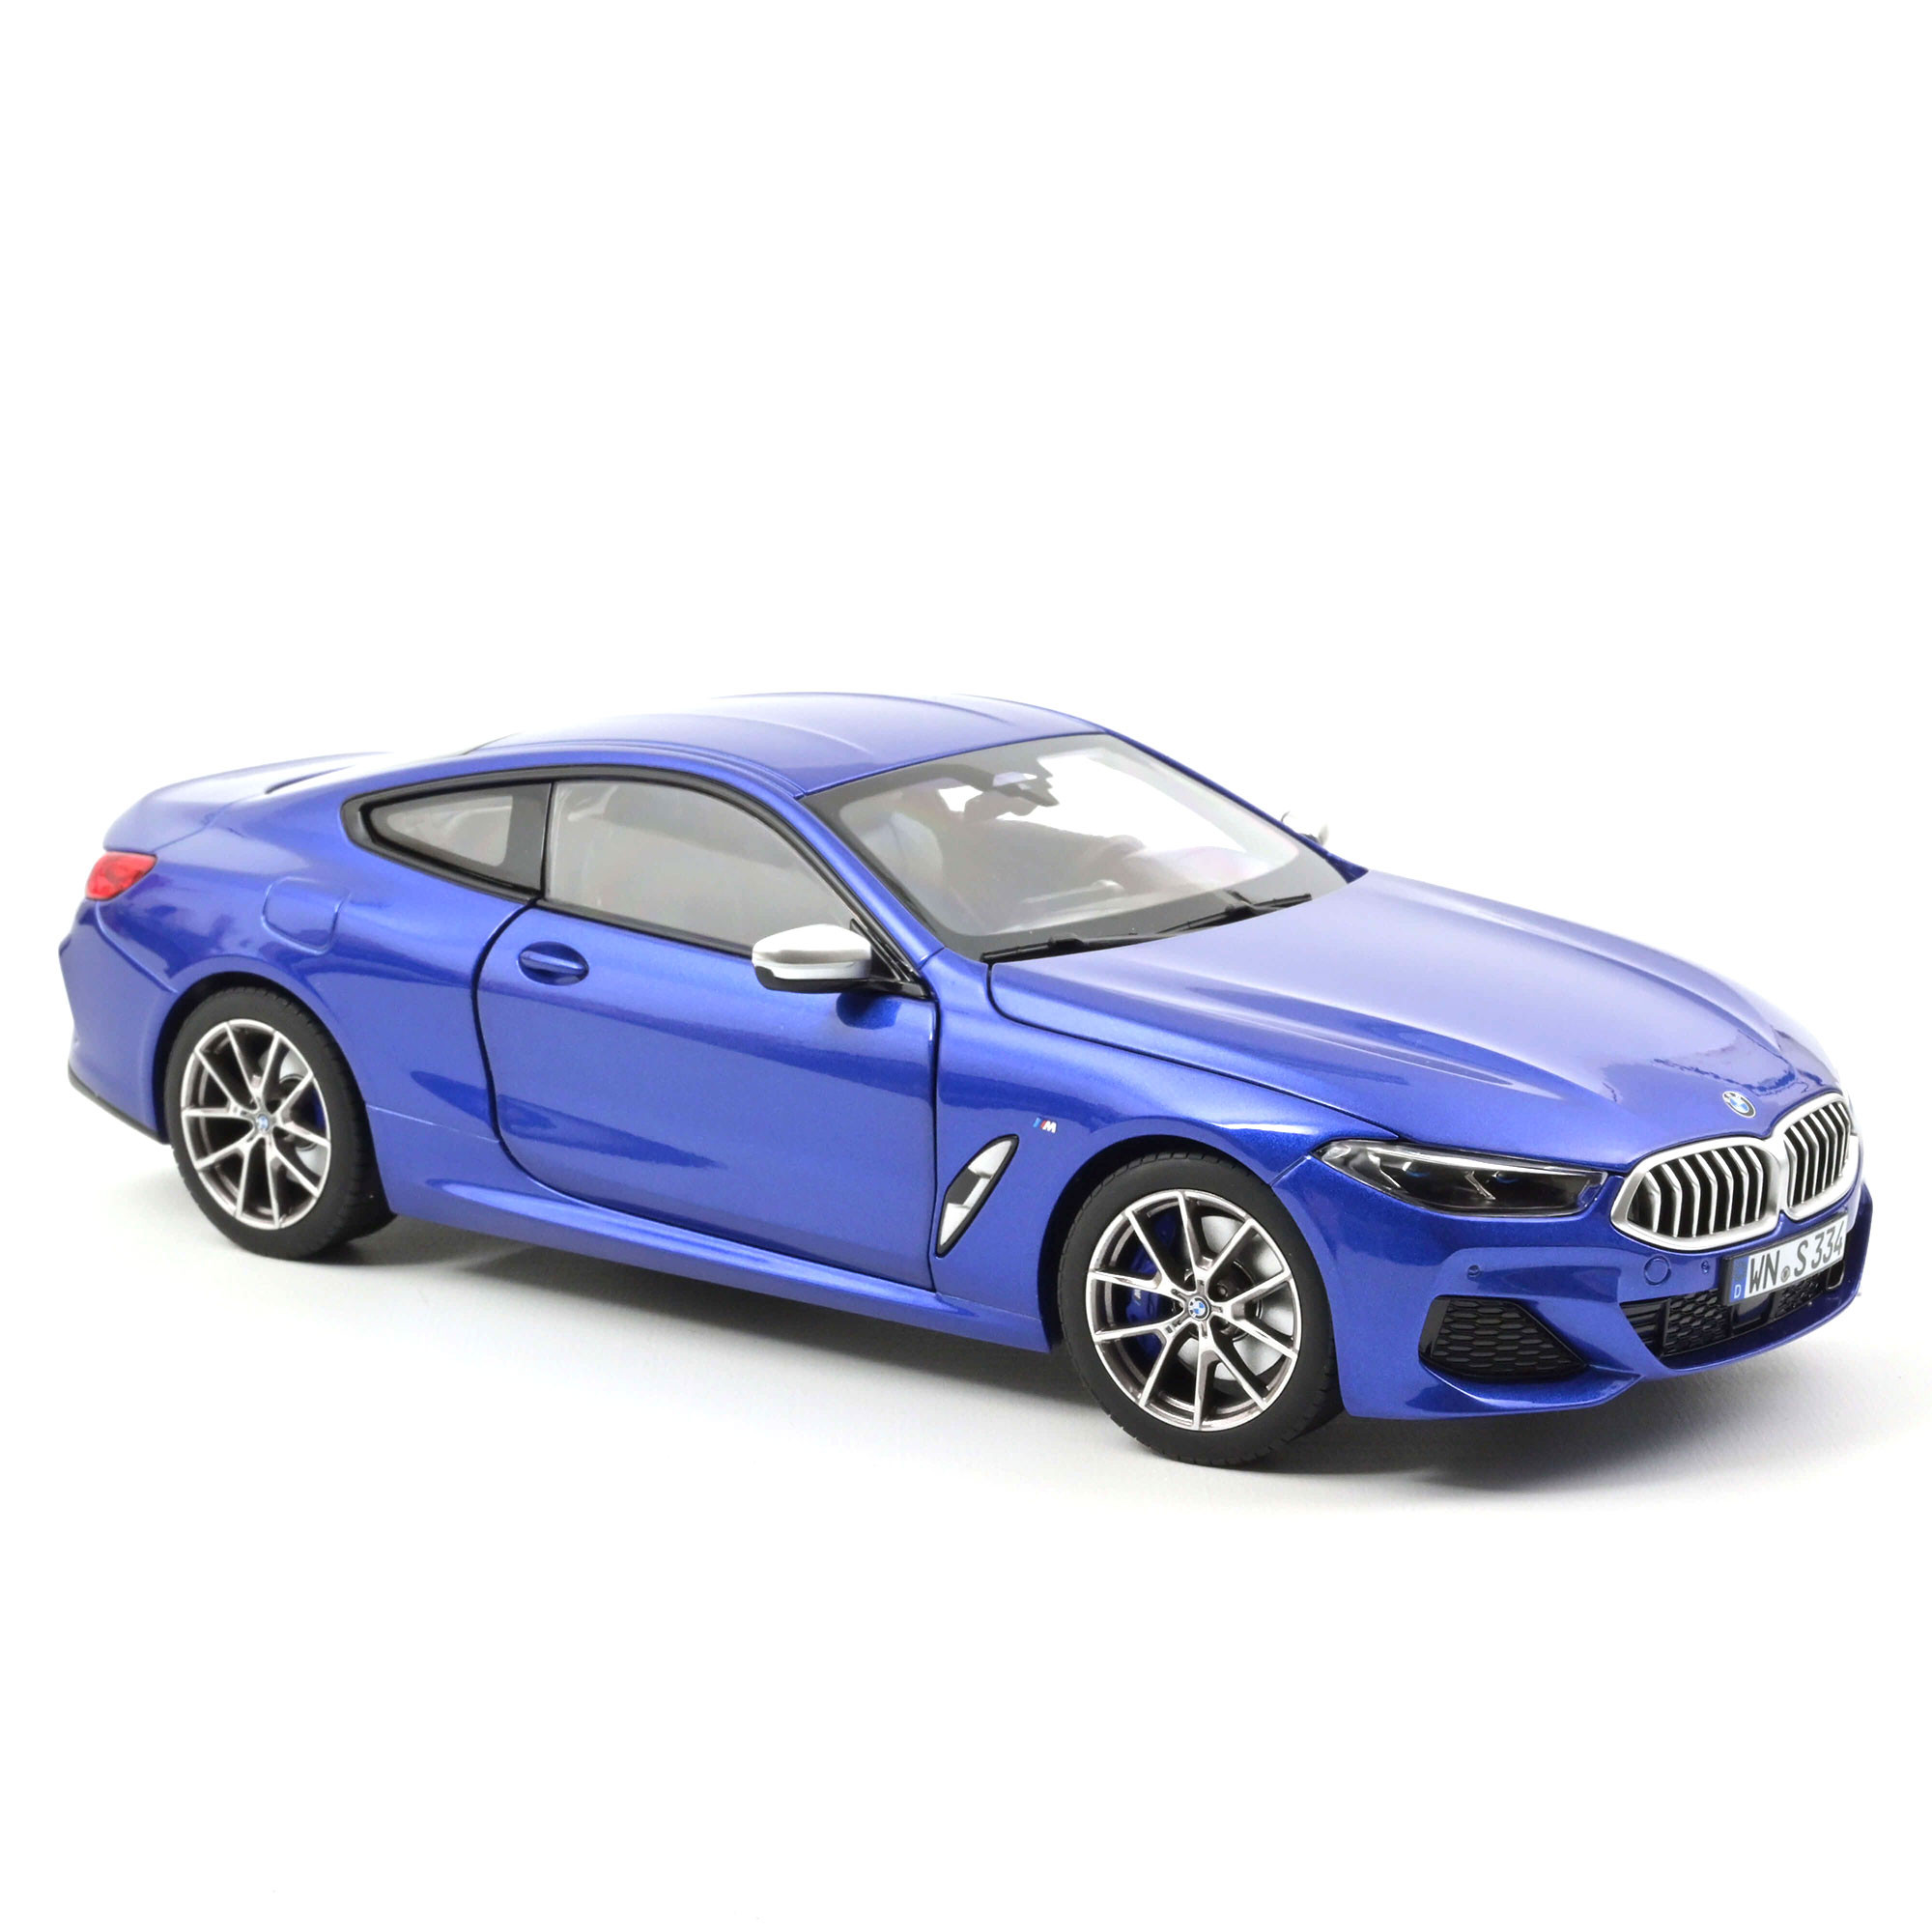 BMW M850i Coupe 1:18 Modellauto Miniatur 1/18 Blue Metallic Blau